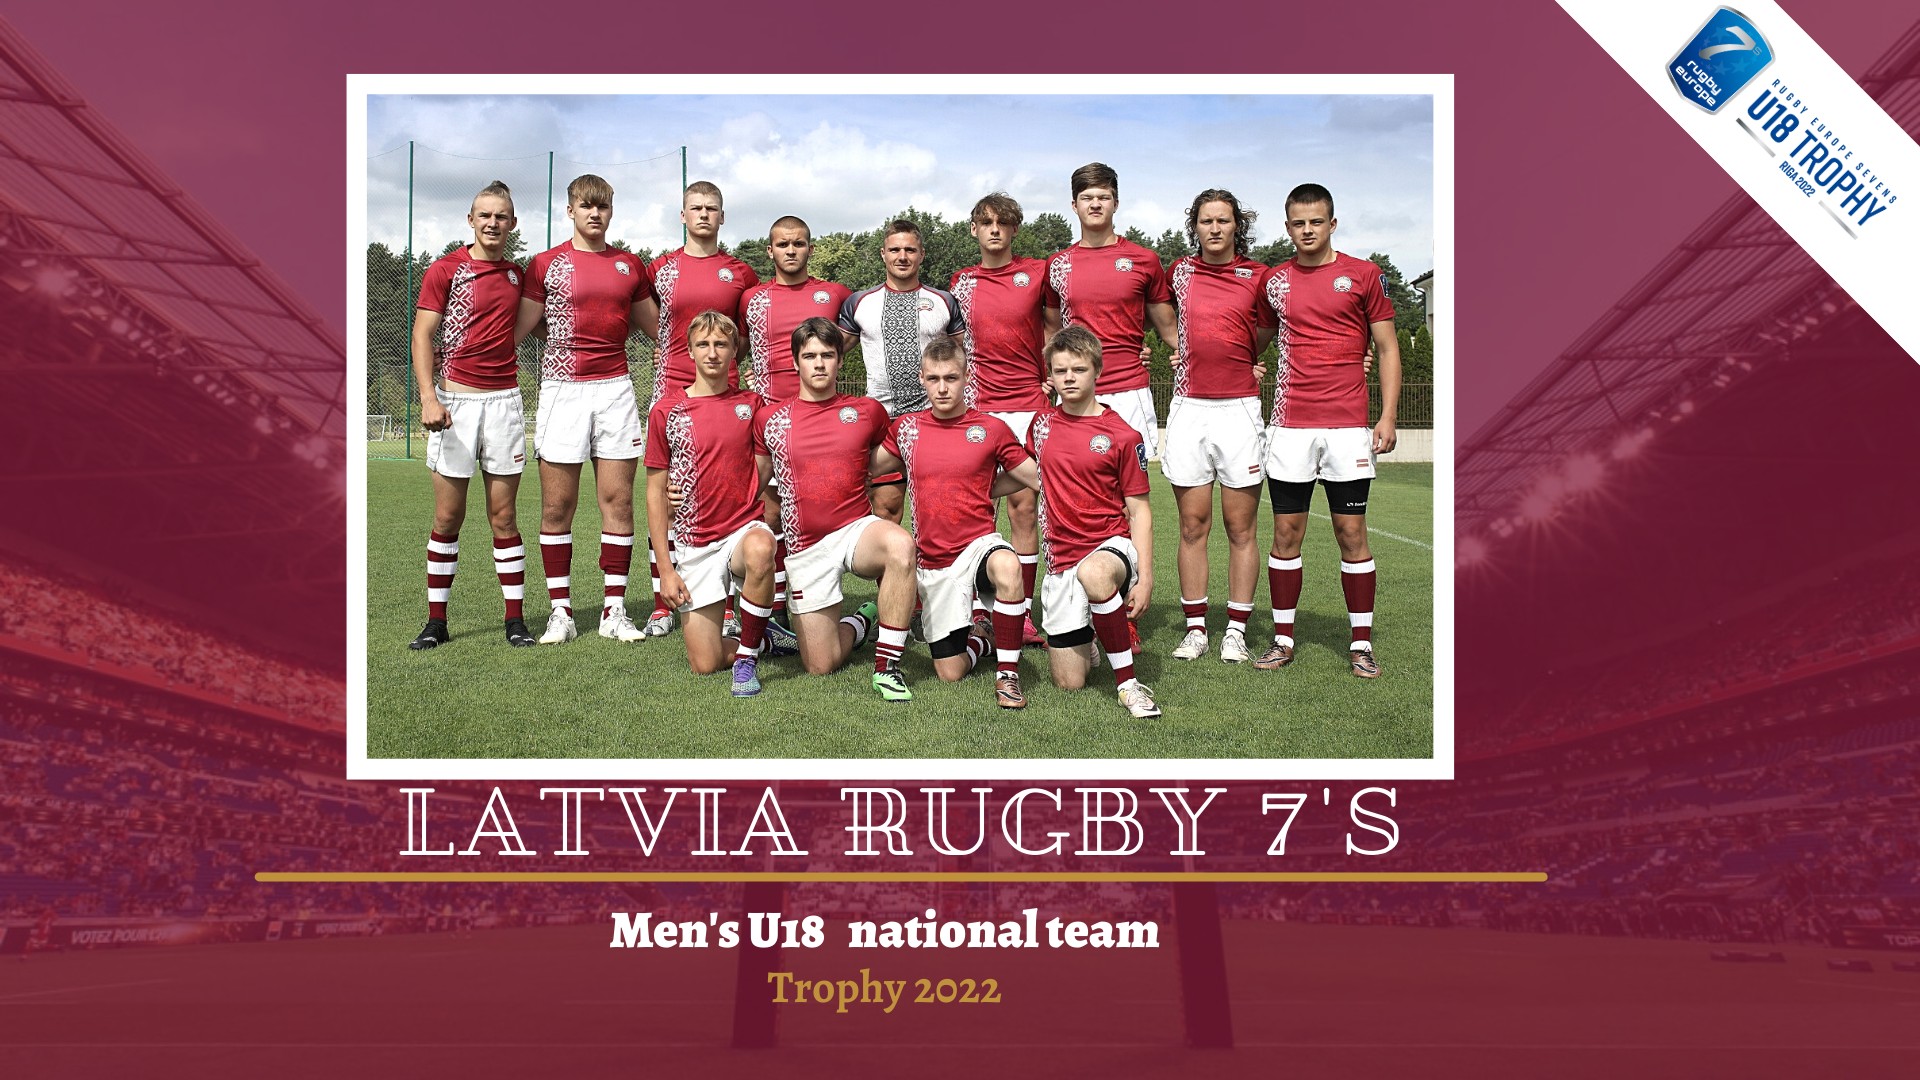 Iepazīsties ar Latvijas U18 R7 izlases sastāvu